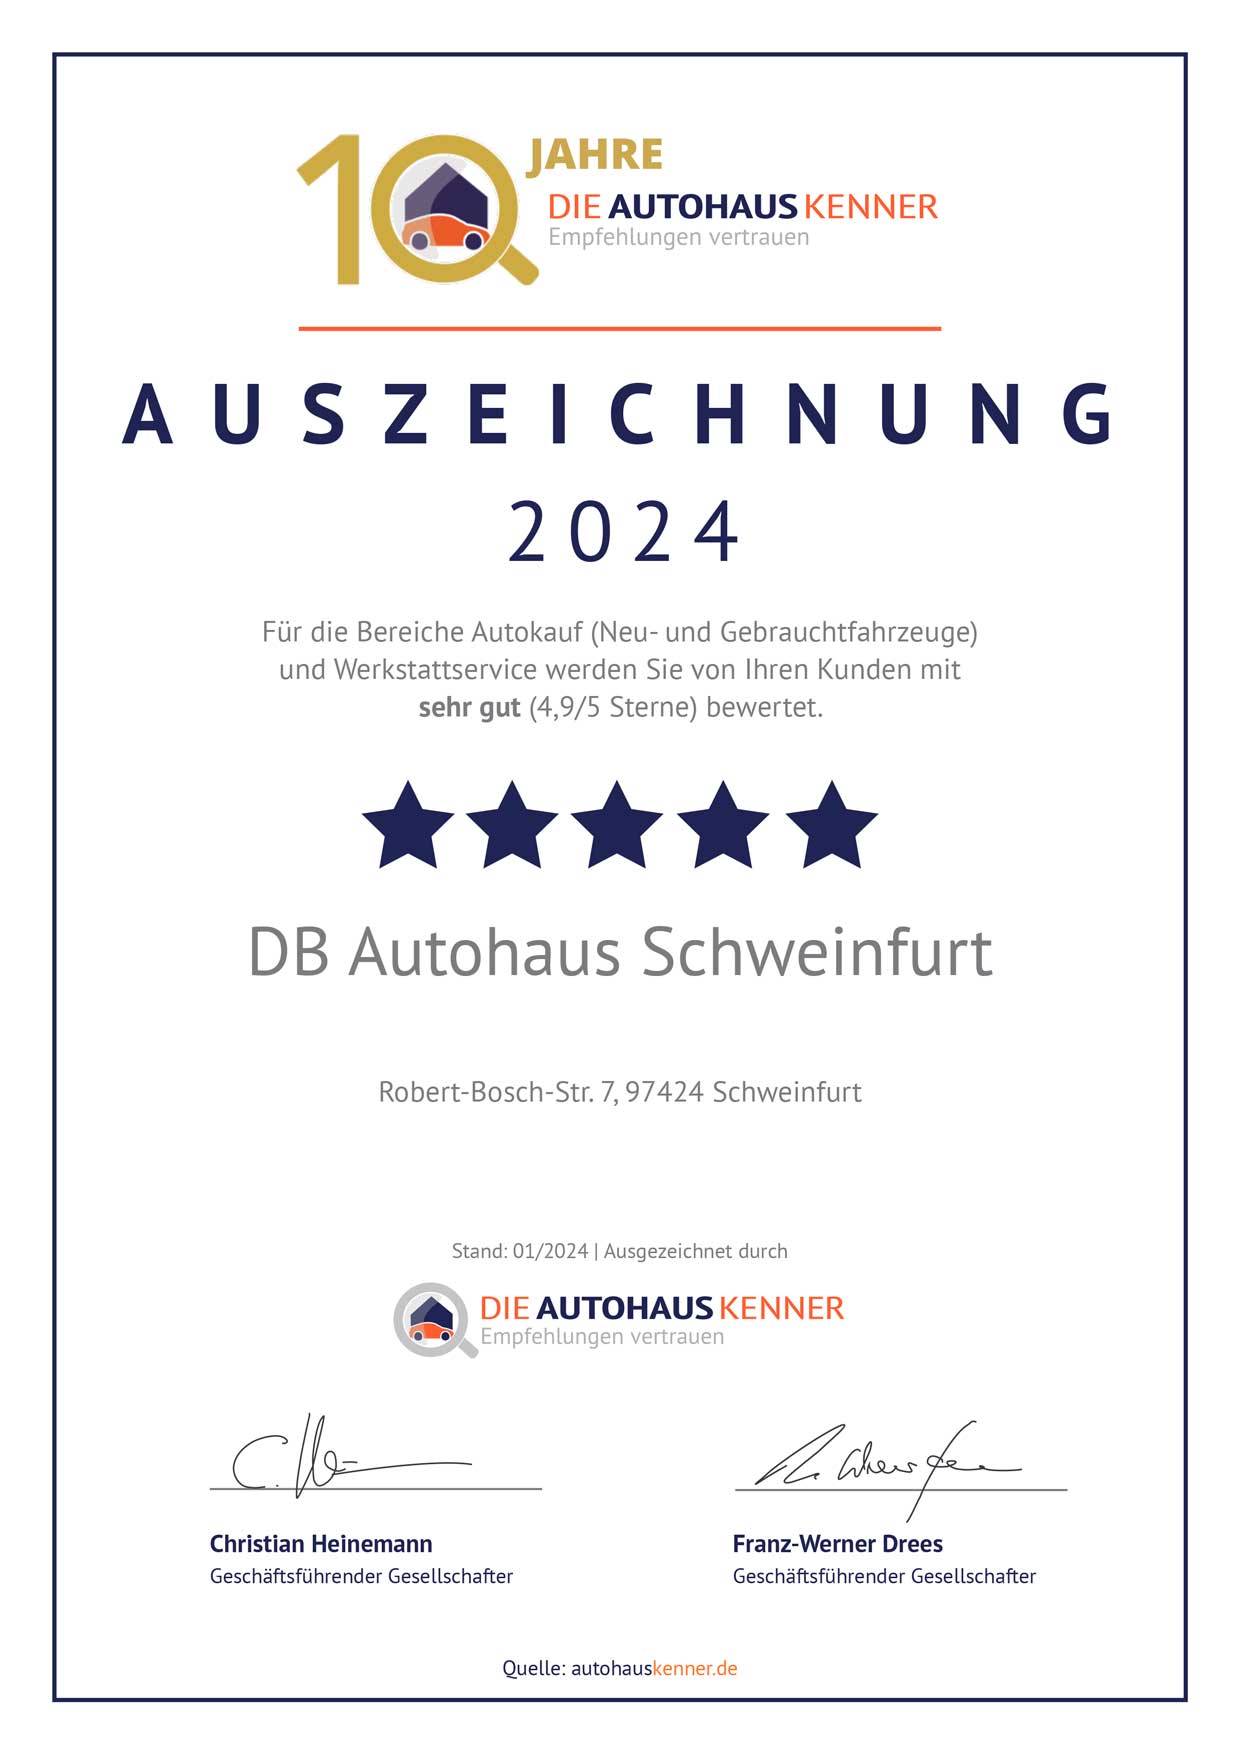 Auszeichnung von Autohauskenner für DB Autohaus Schweinfurt